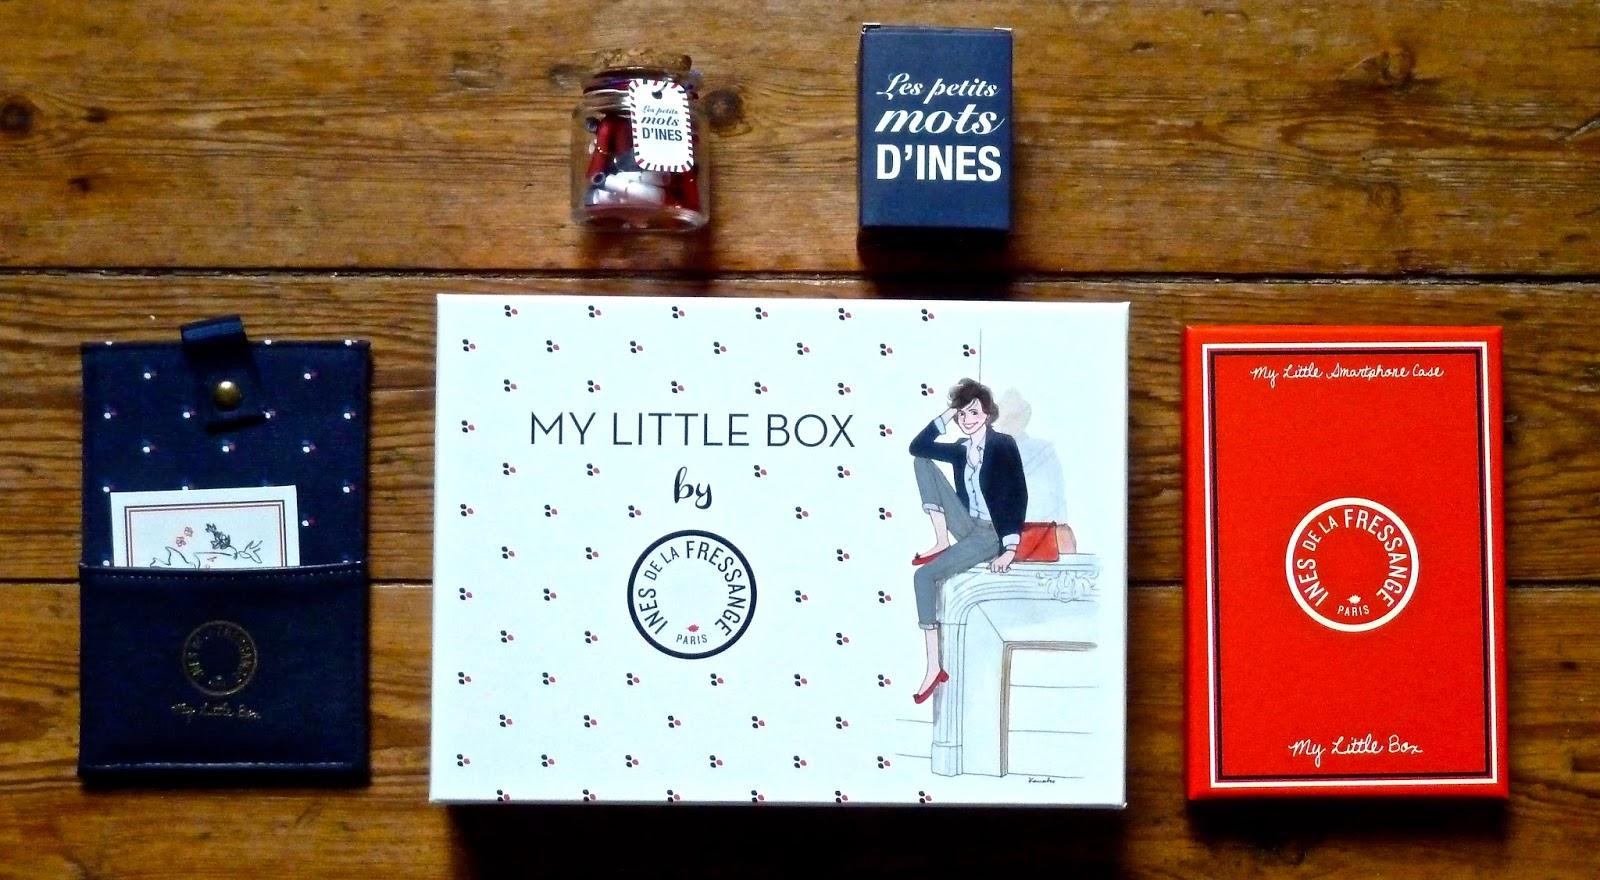 My Little Box by Ines De La Fressange fait un bide - Février 2015